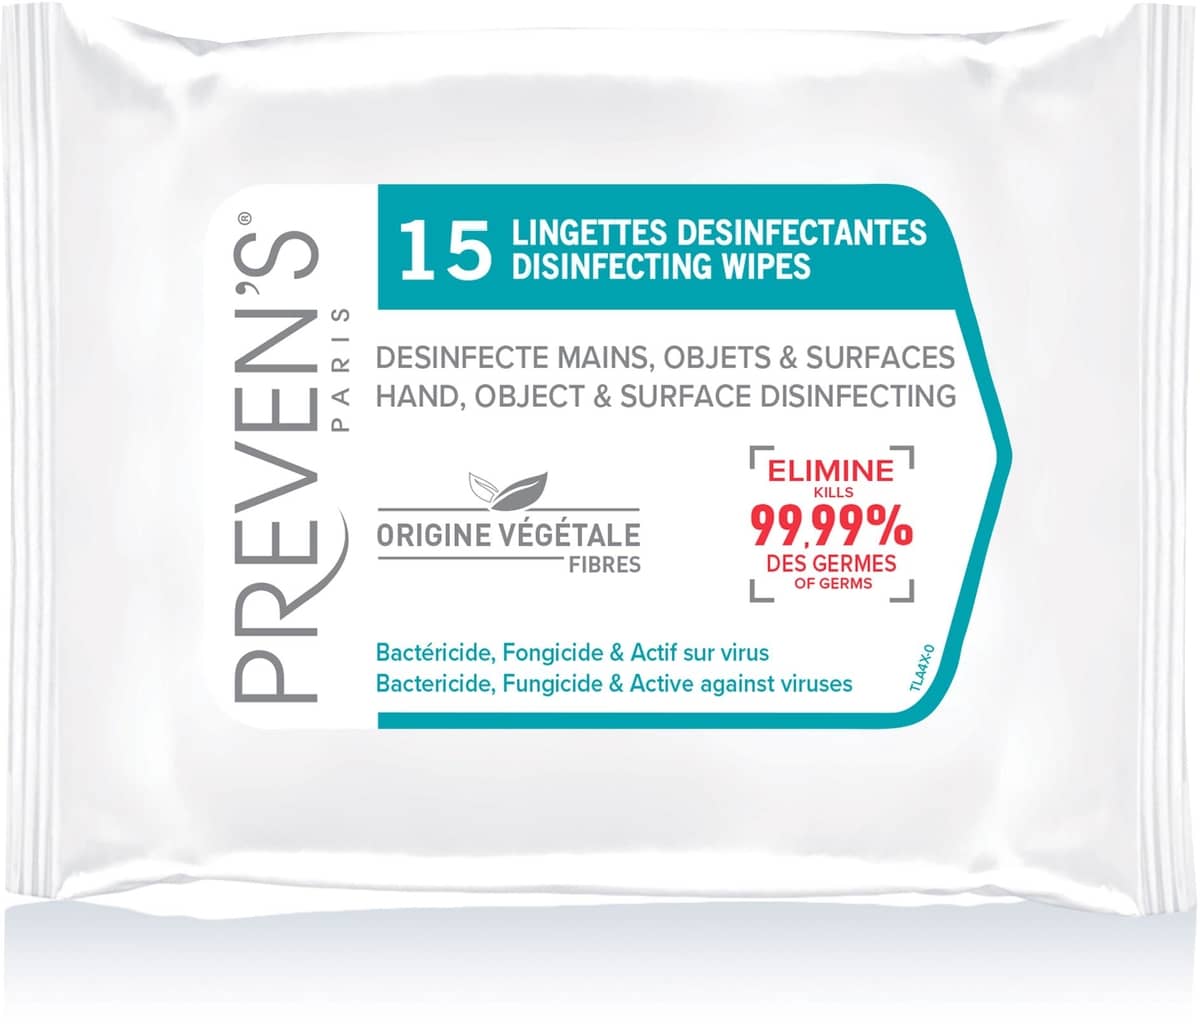 Preven's Lingettes Desinfectantes 15